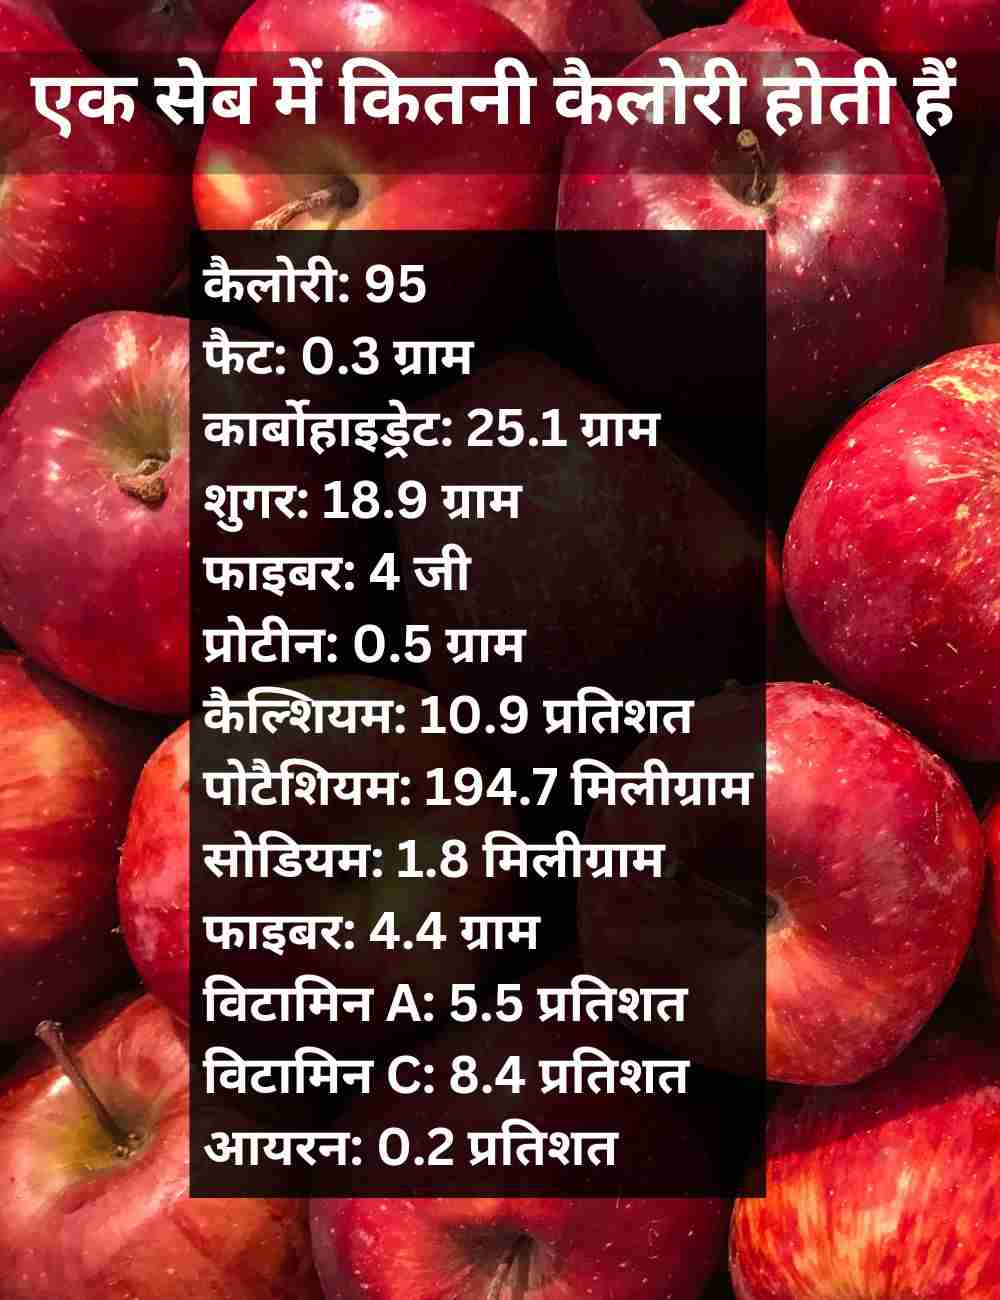 Nutrients in an Apple